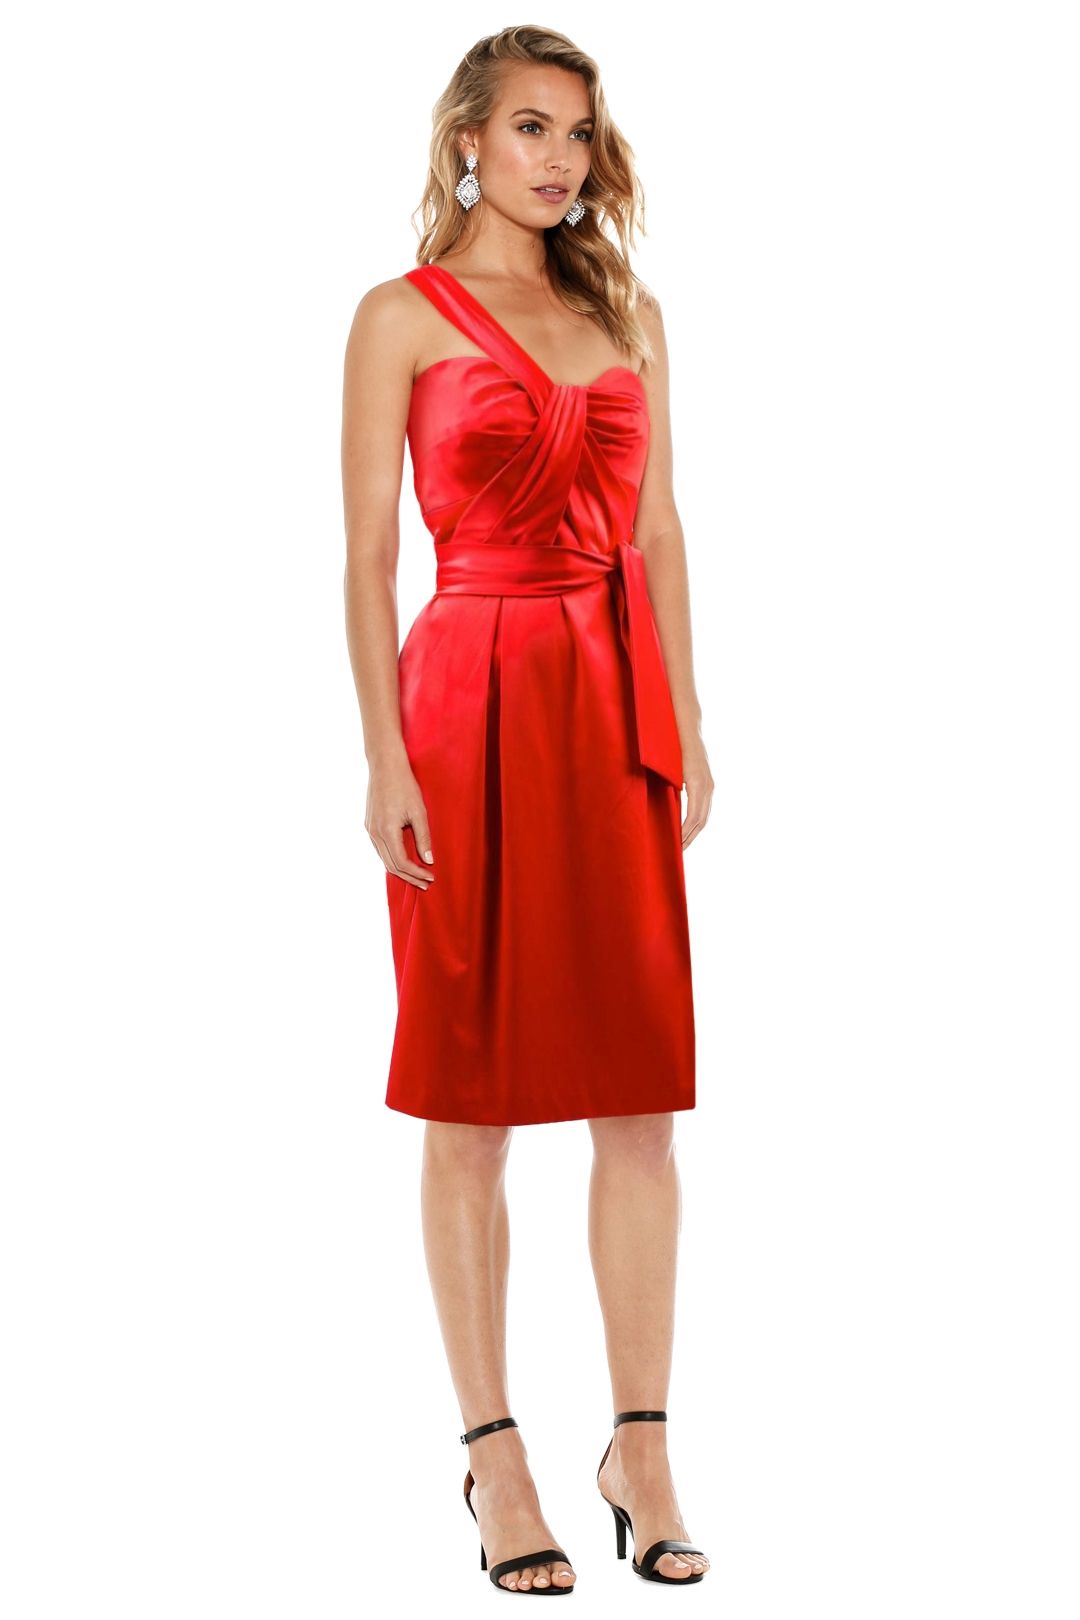 Matthew Eager - Miama Dress - Red - Side